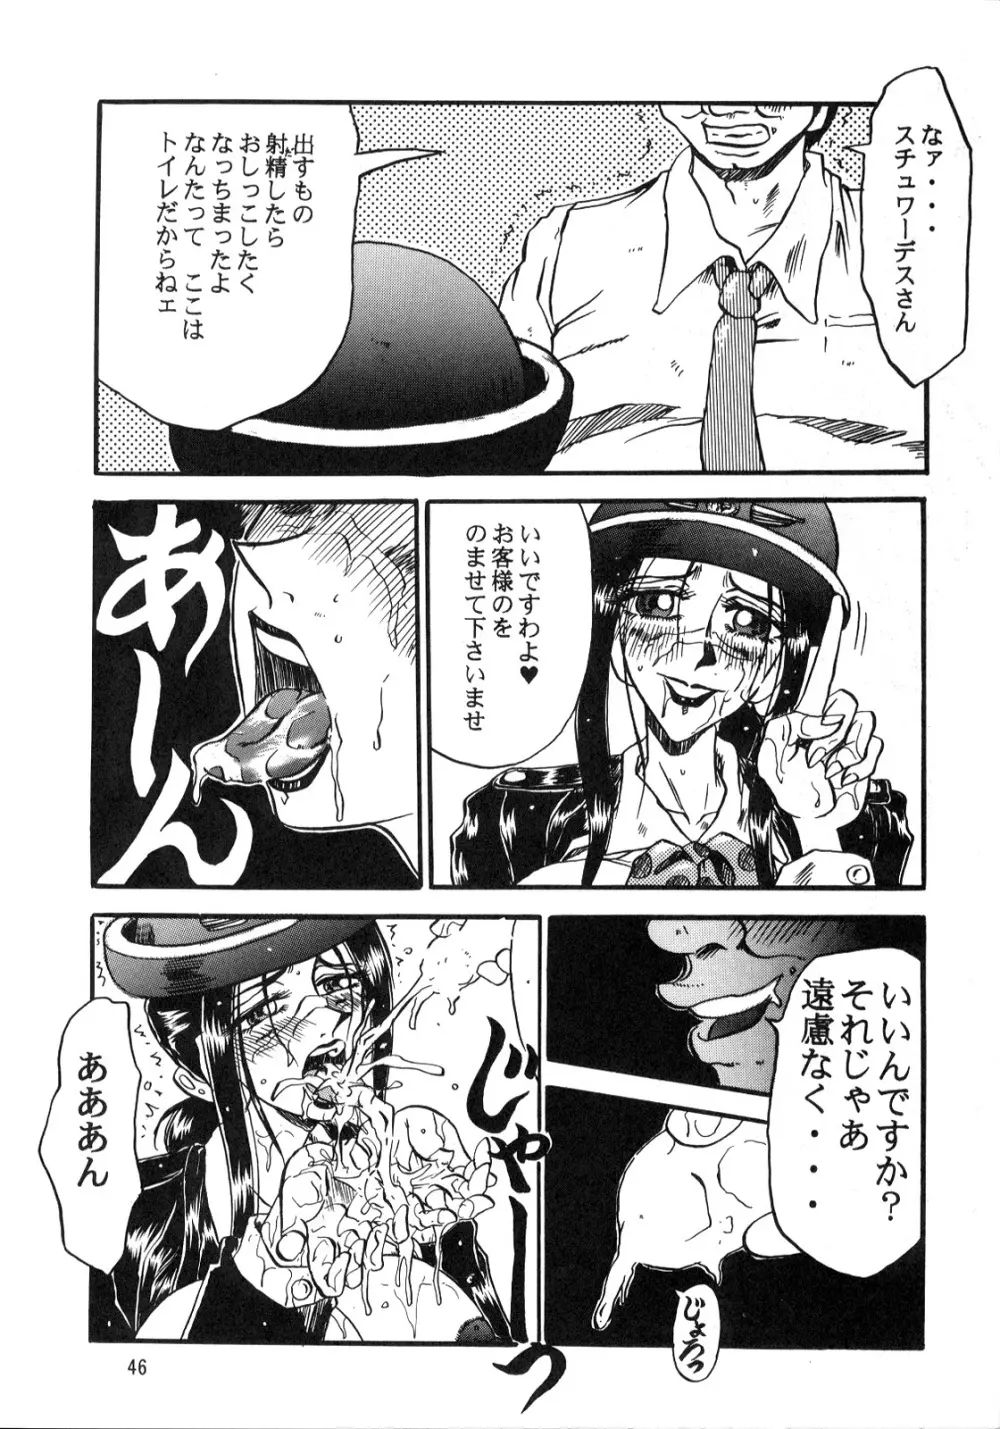 るんるんるん16 46ページ